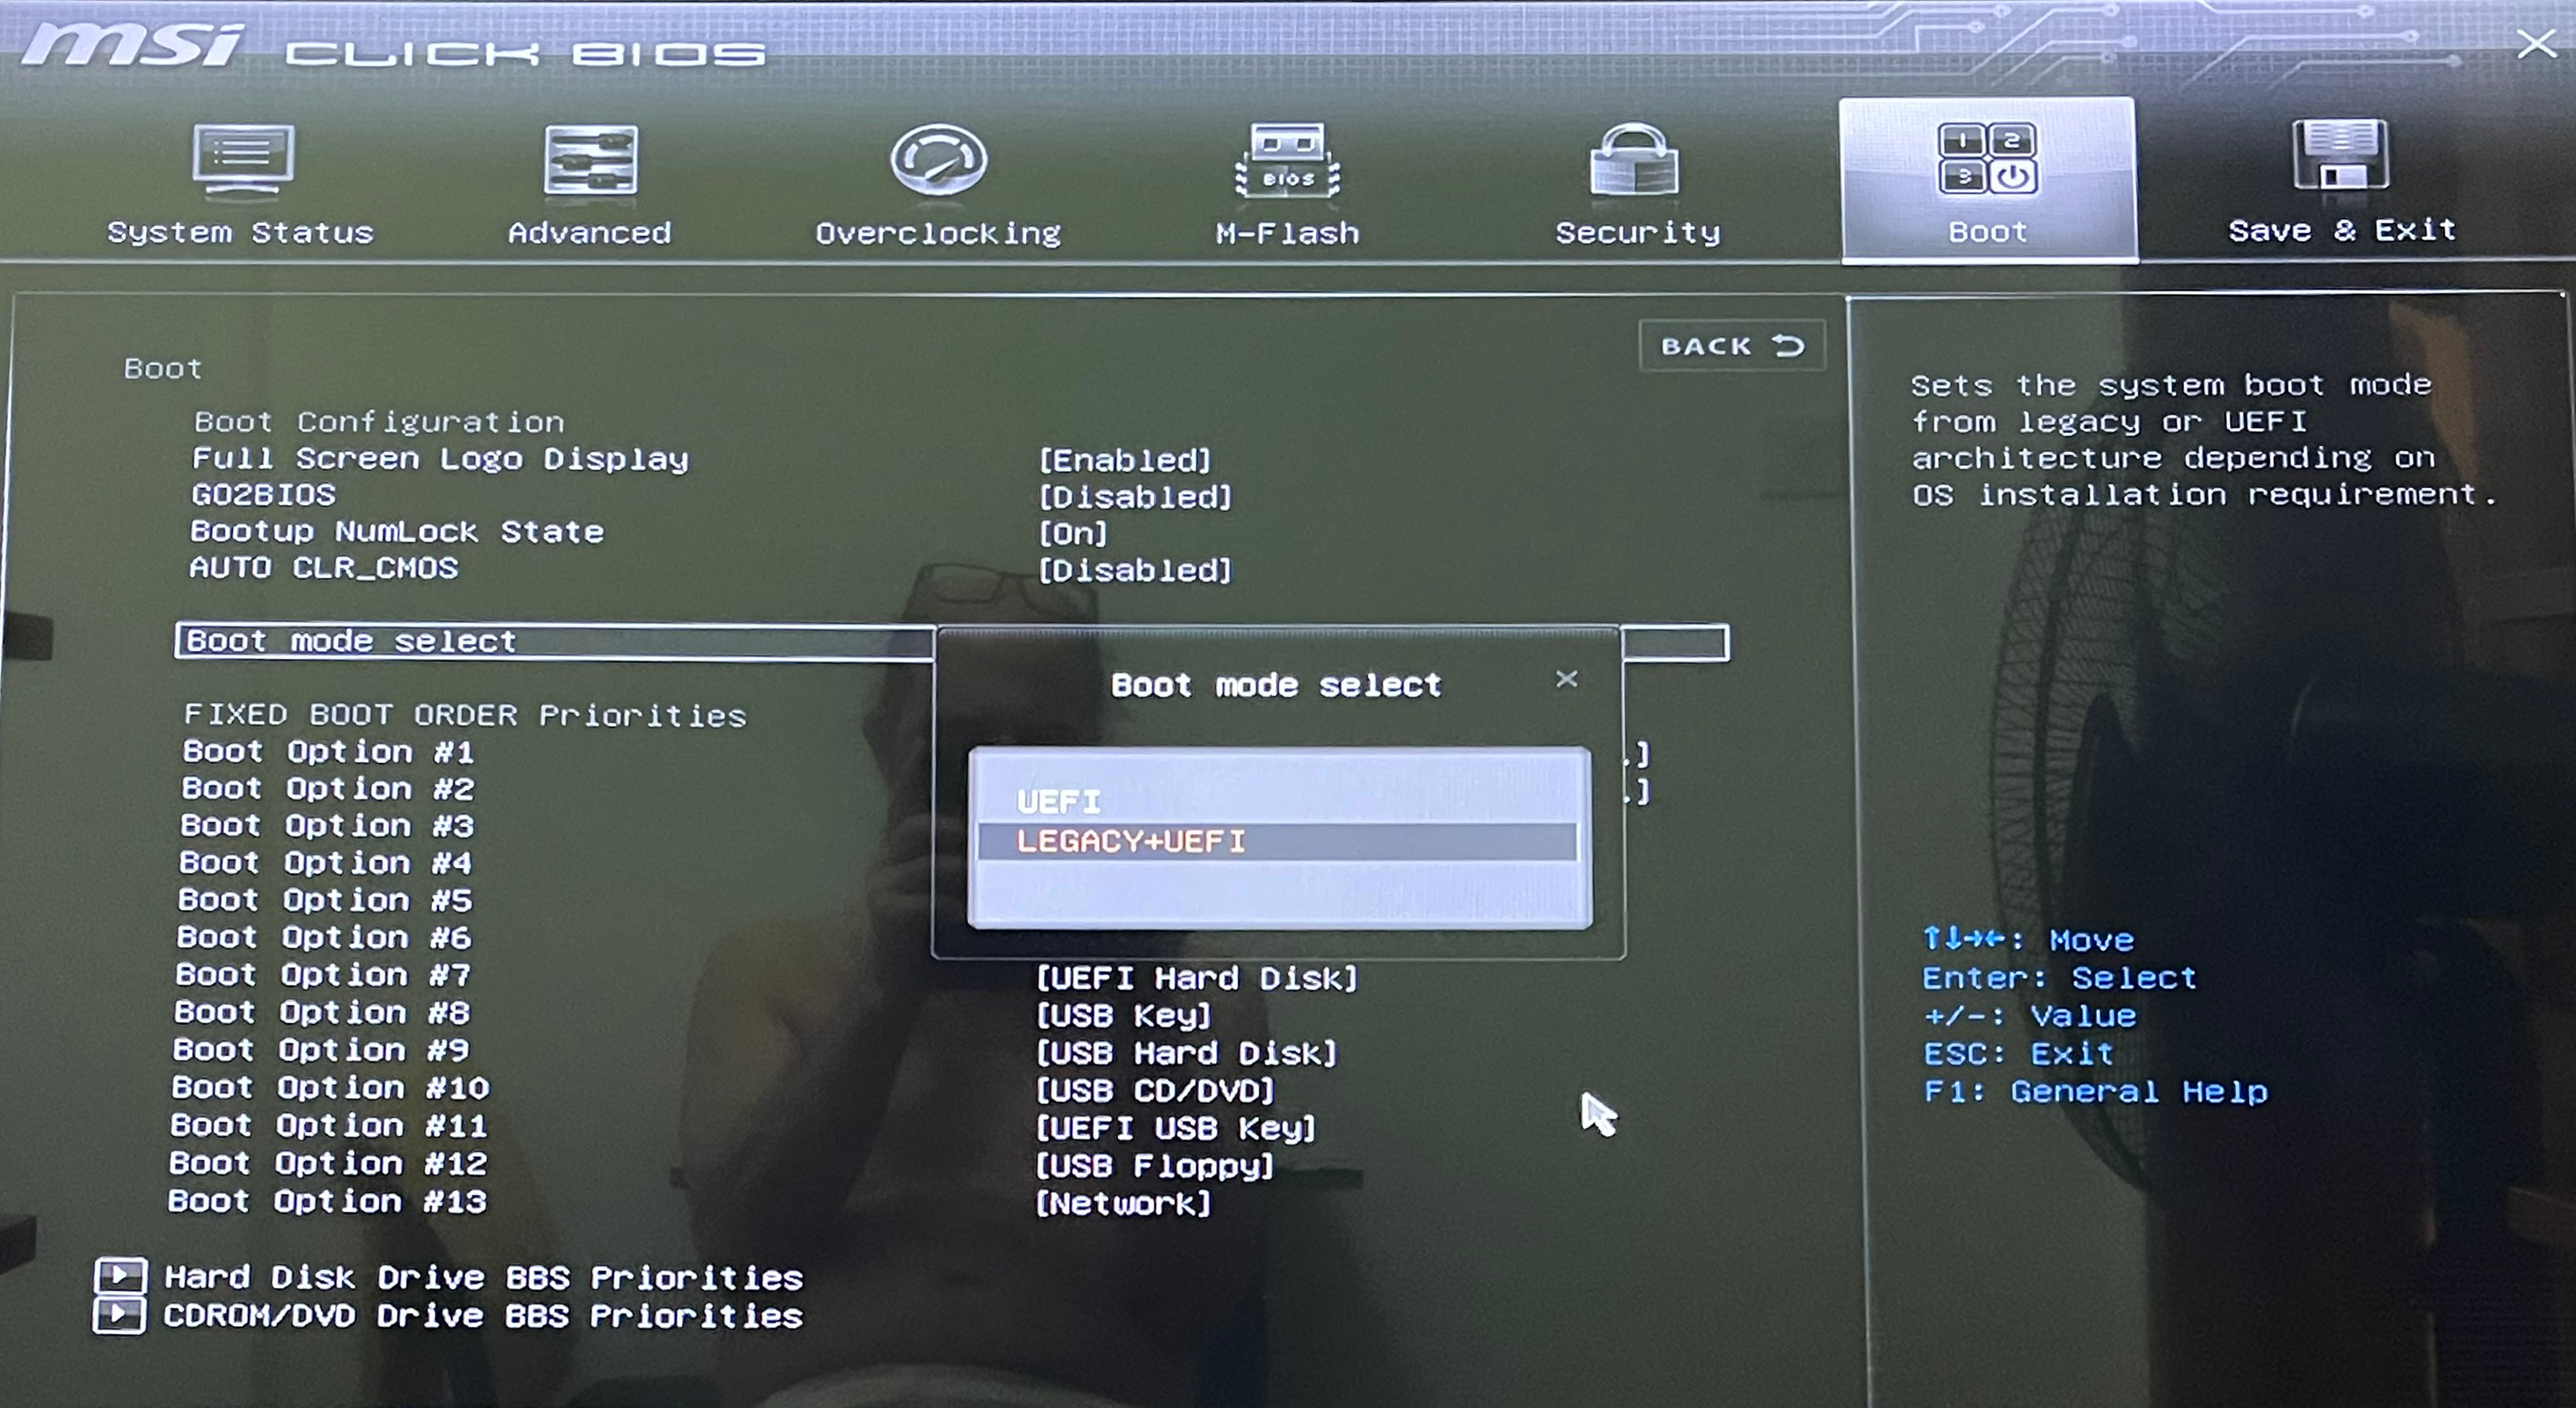 Bilgisayarınızdan boot açılış sayfasından UEFI Secure Boot etkinleştirme